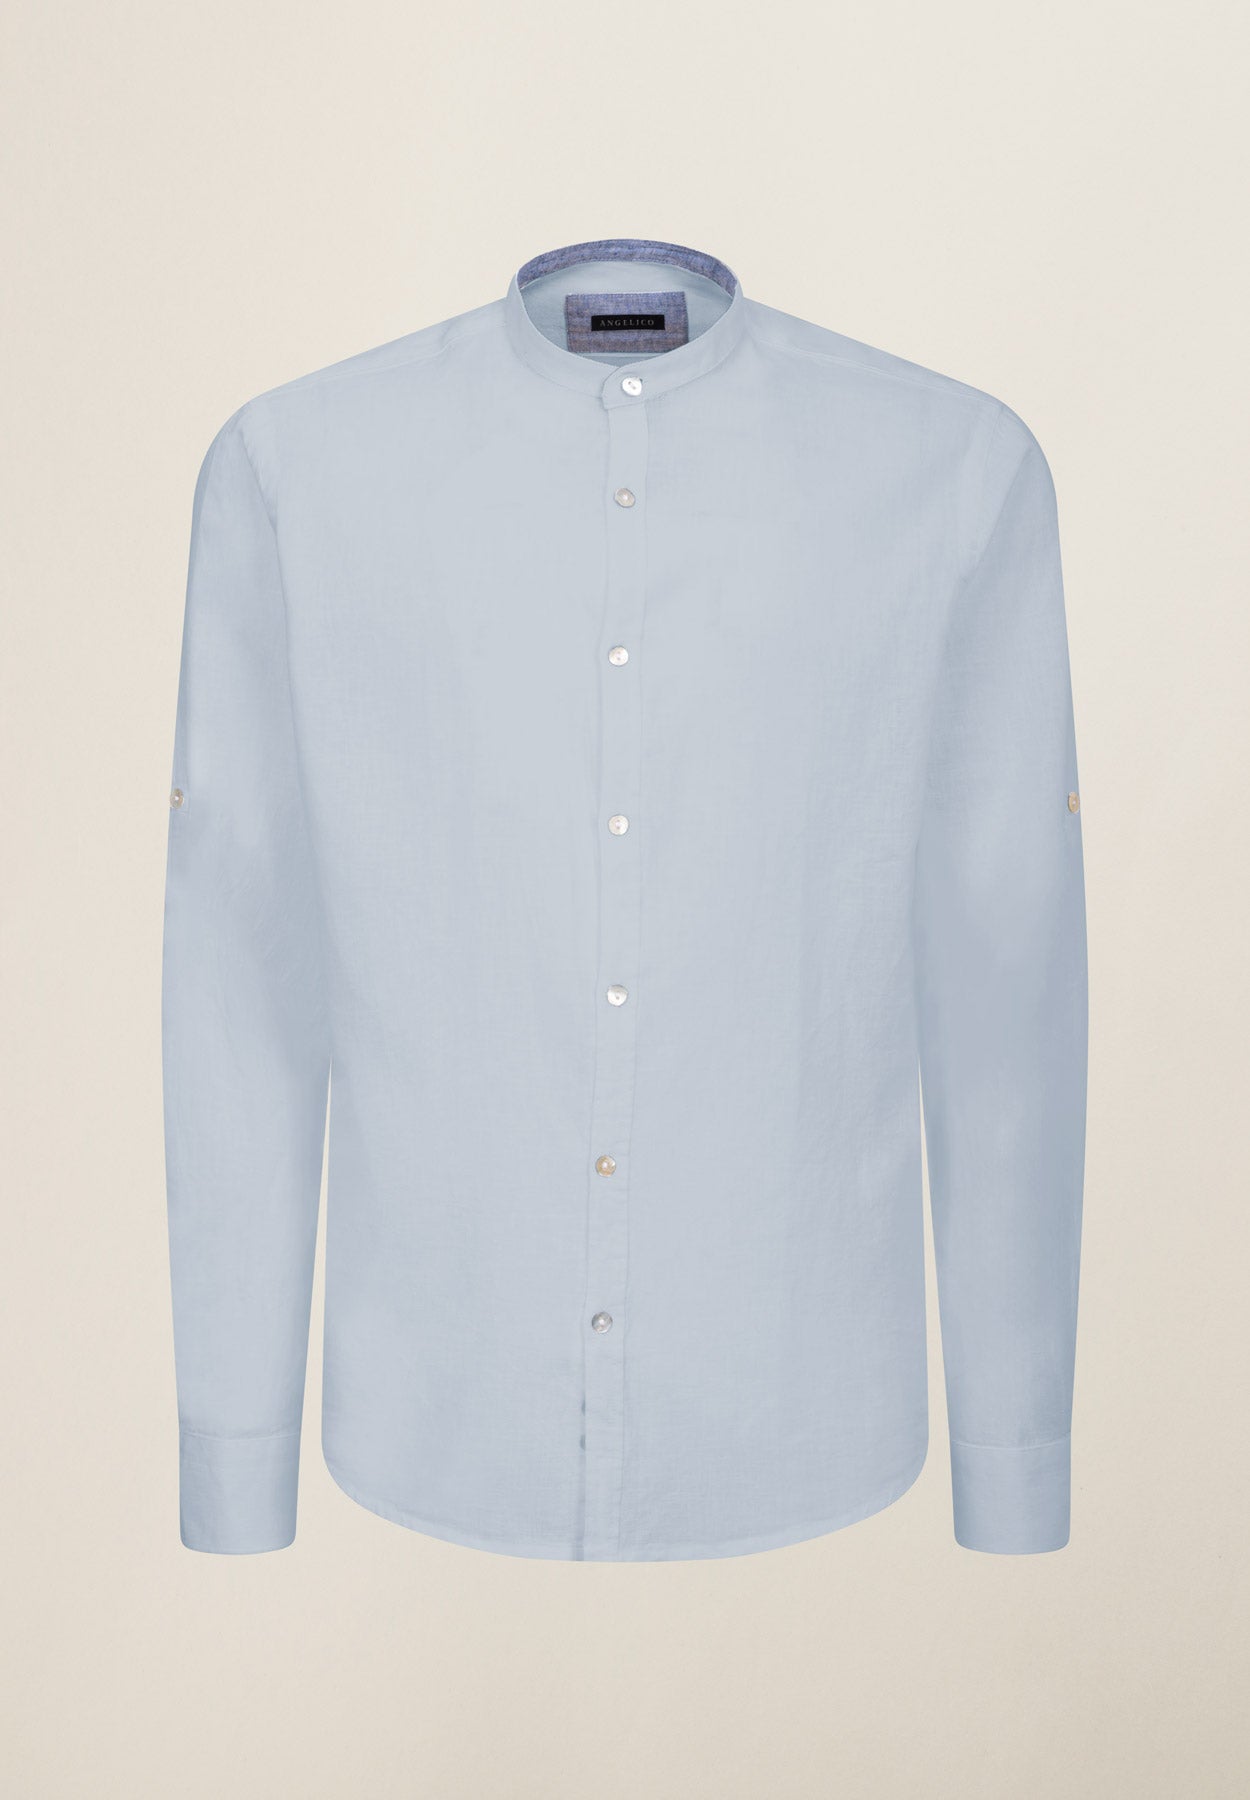 Camicia azzurra collo coreano cotone-lino slim fit